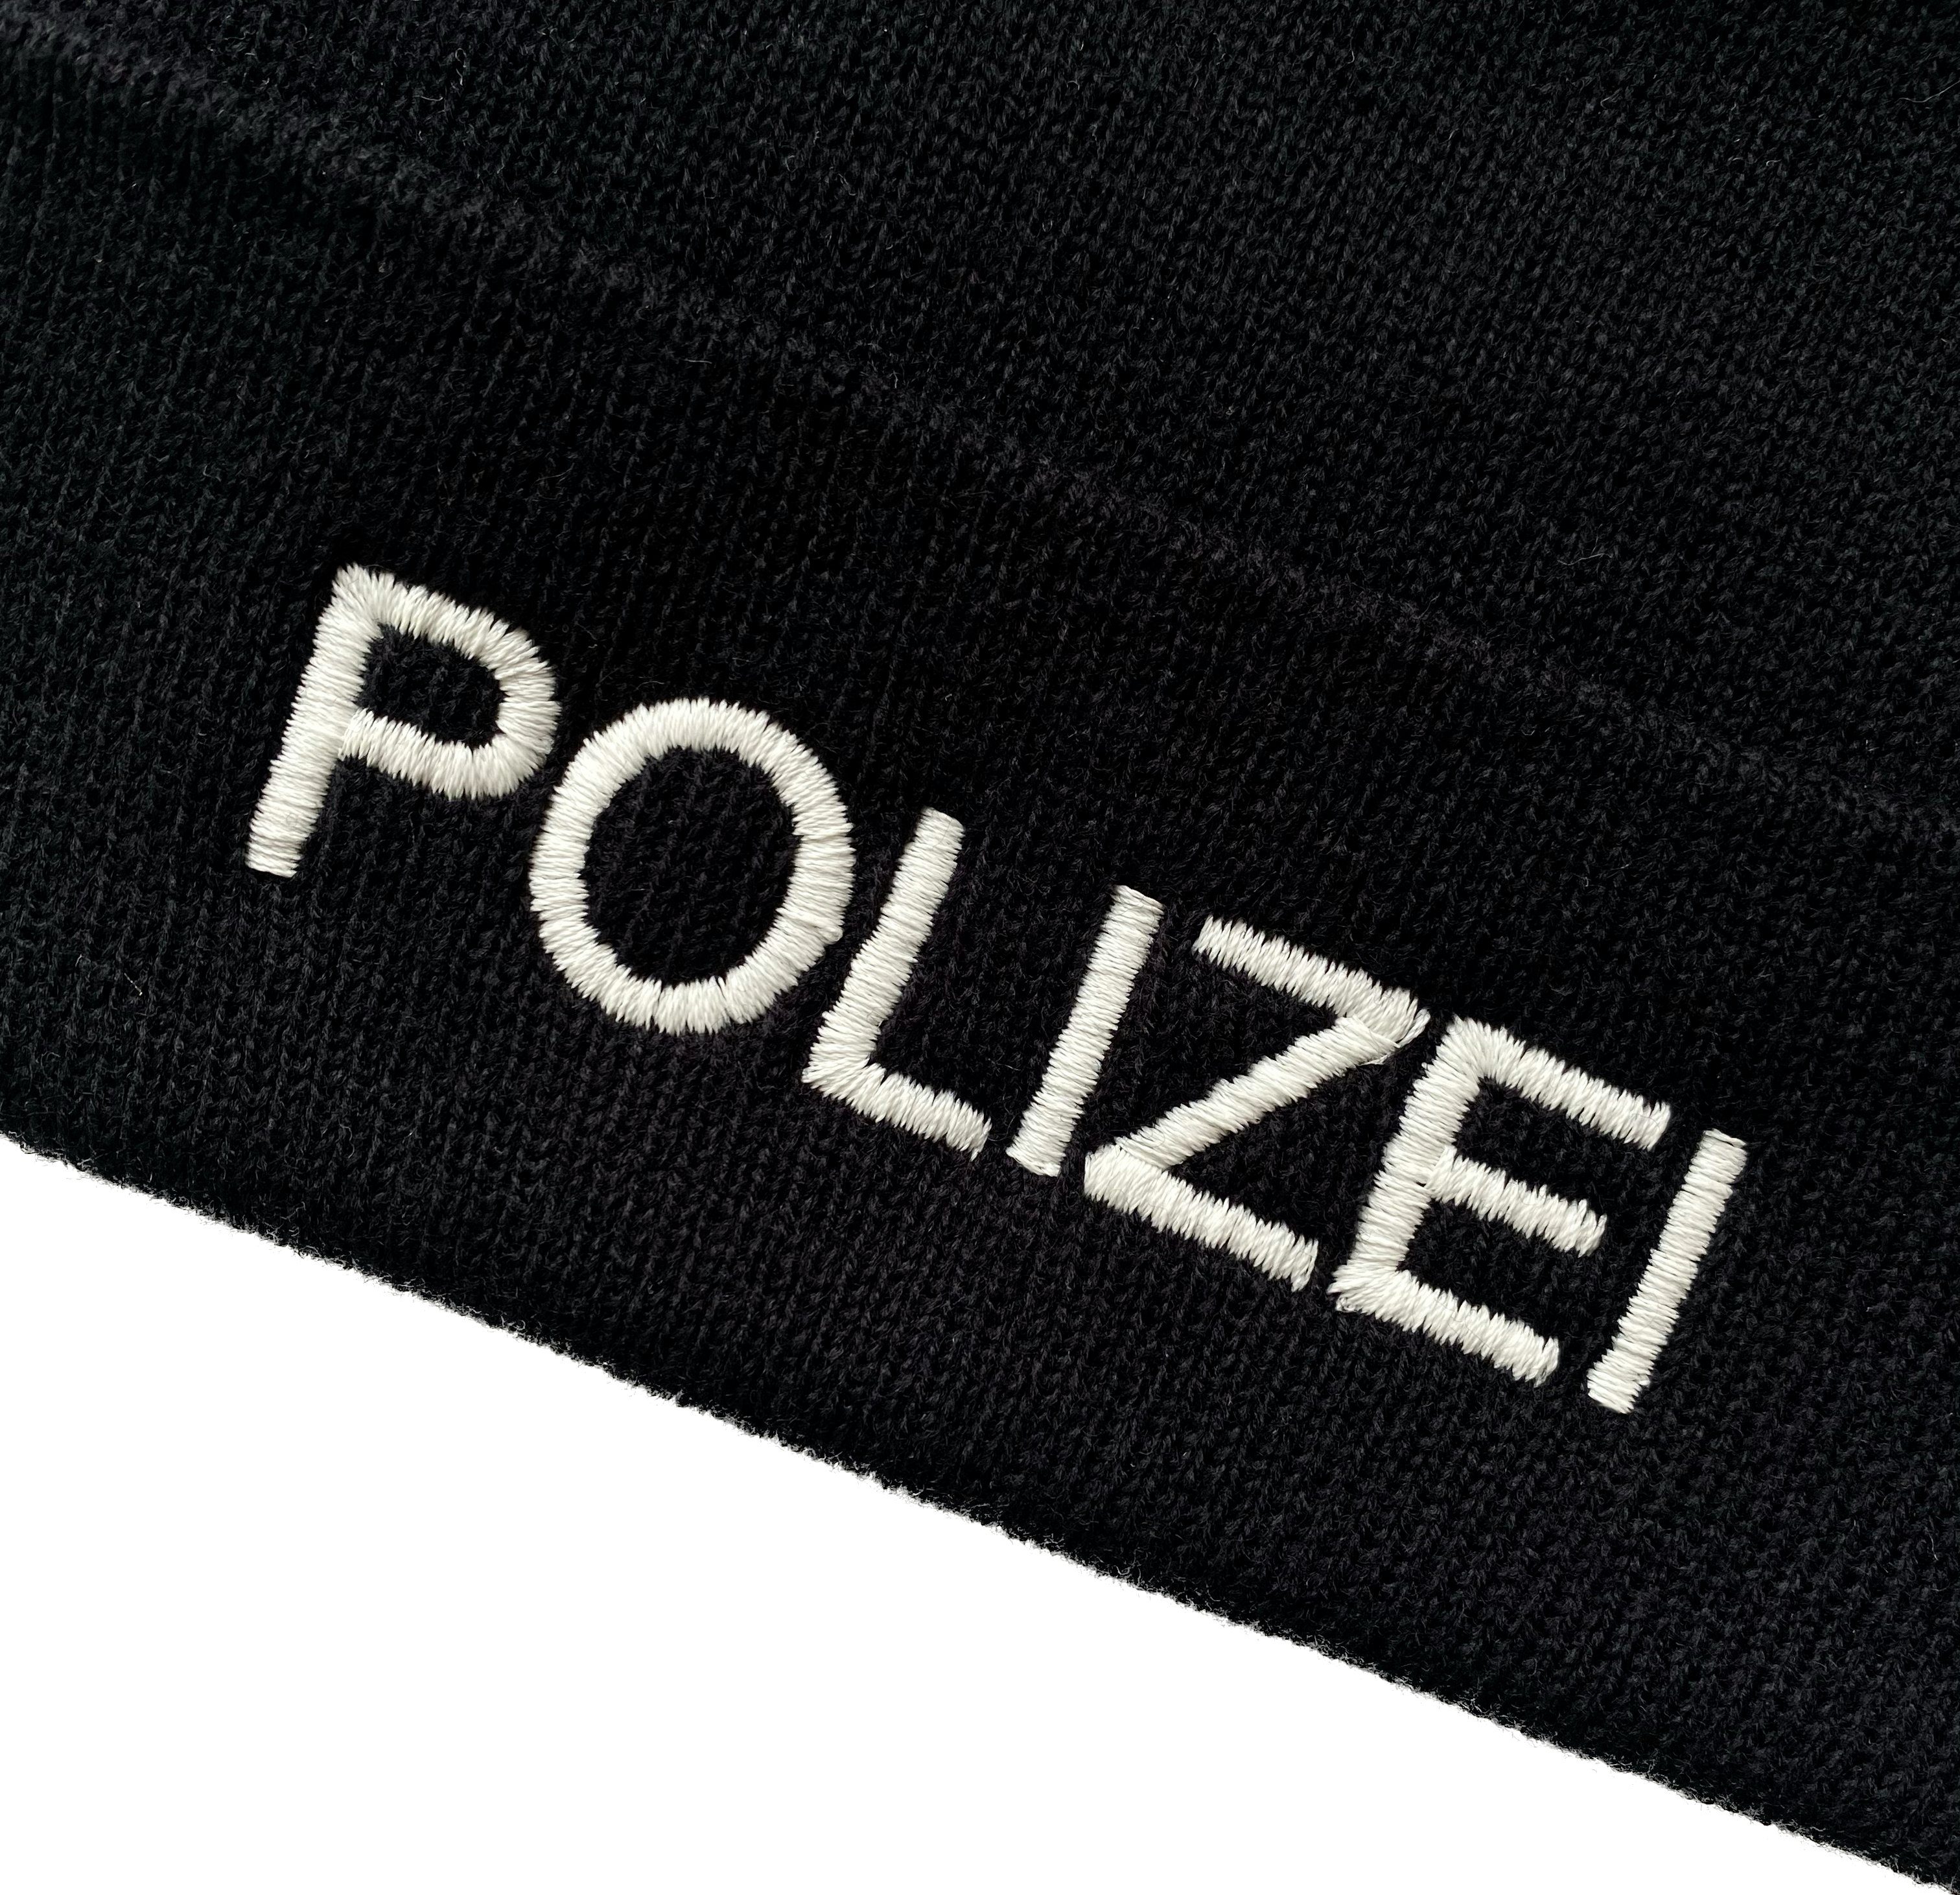 Strickmütze (Beanie breiten Polizei Mütze) mit schwarz Strickmütze mit Umschlag mit bestickt Schnoschi Umschlag